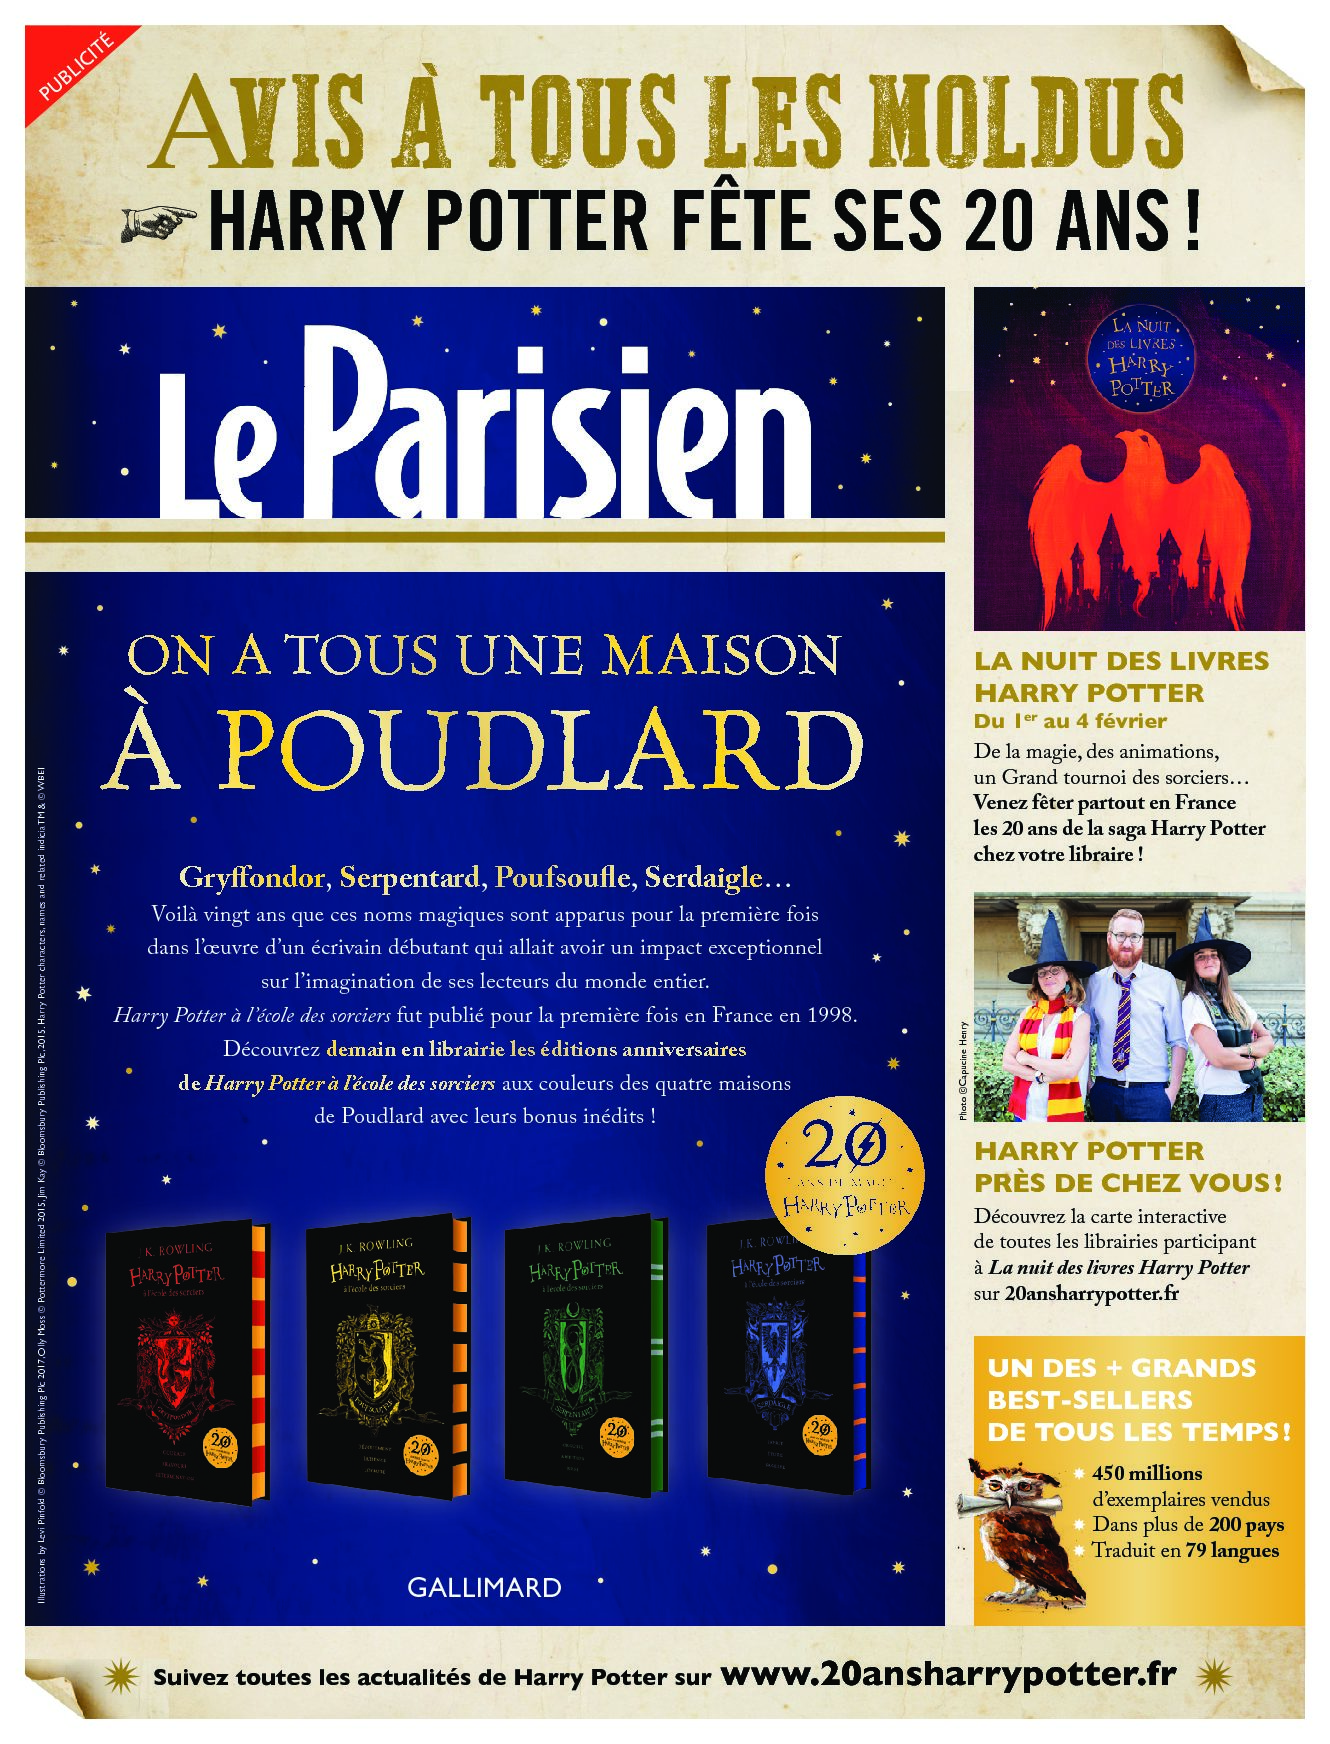 Harry Potter à l'école des Sorciers - Edition 20 ans Serdaigle